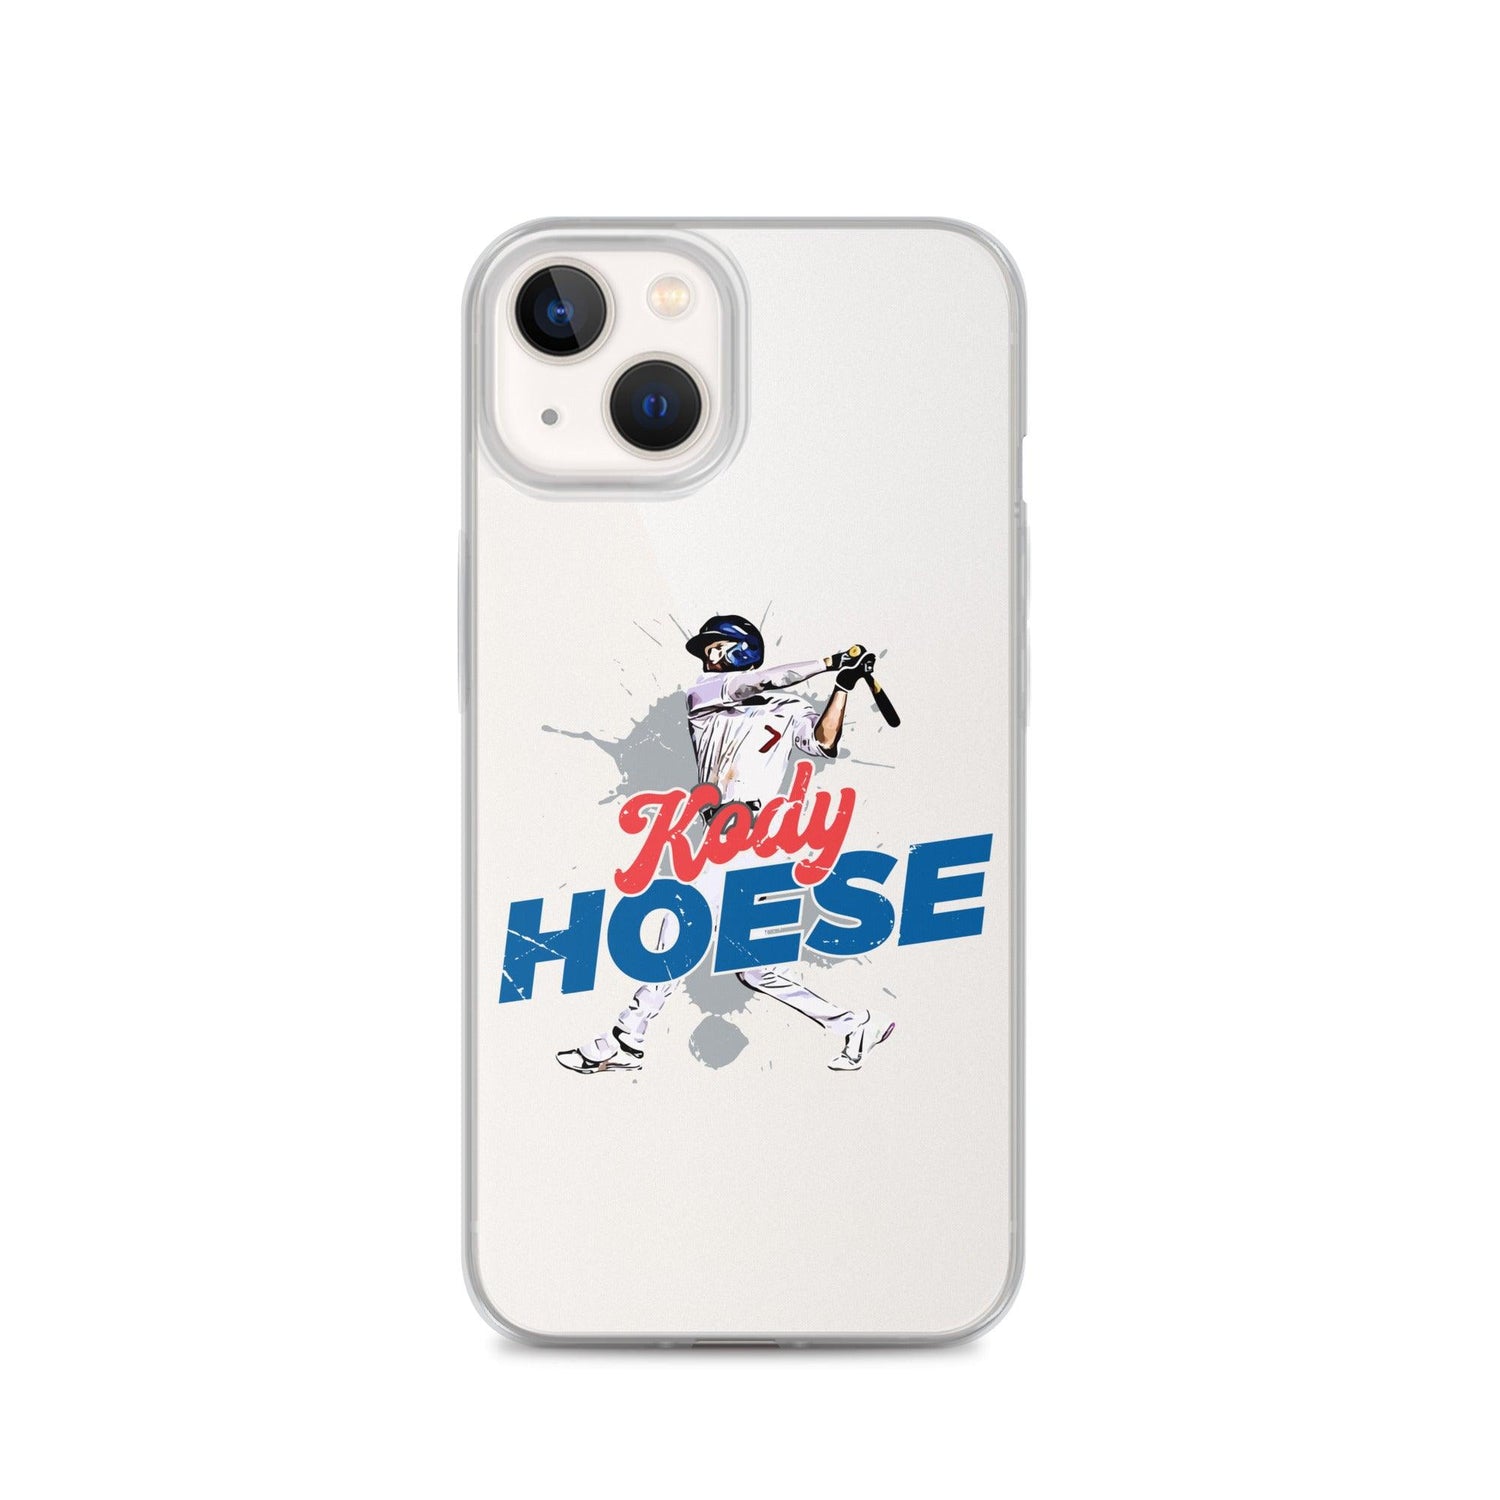 Kody Hoese "Power" iPhone Case - Fan Arch